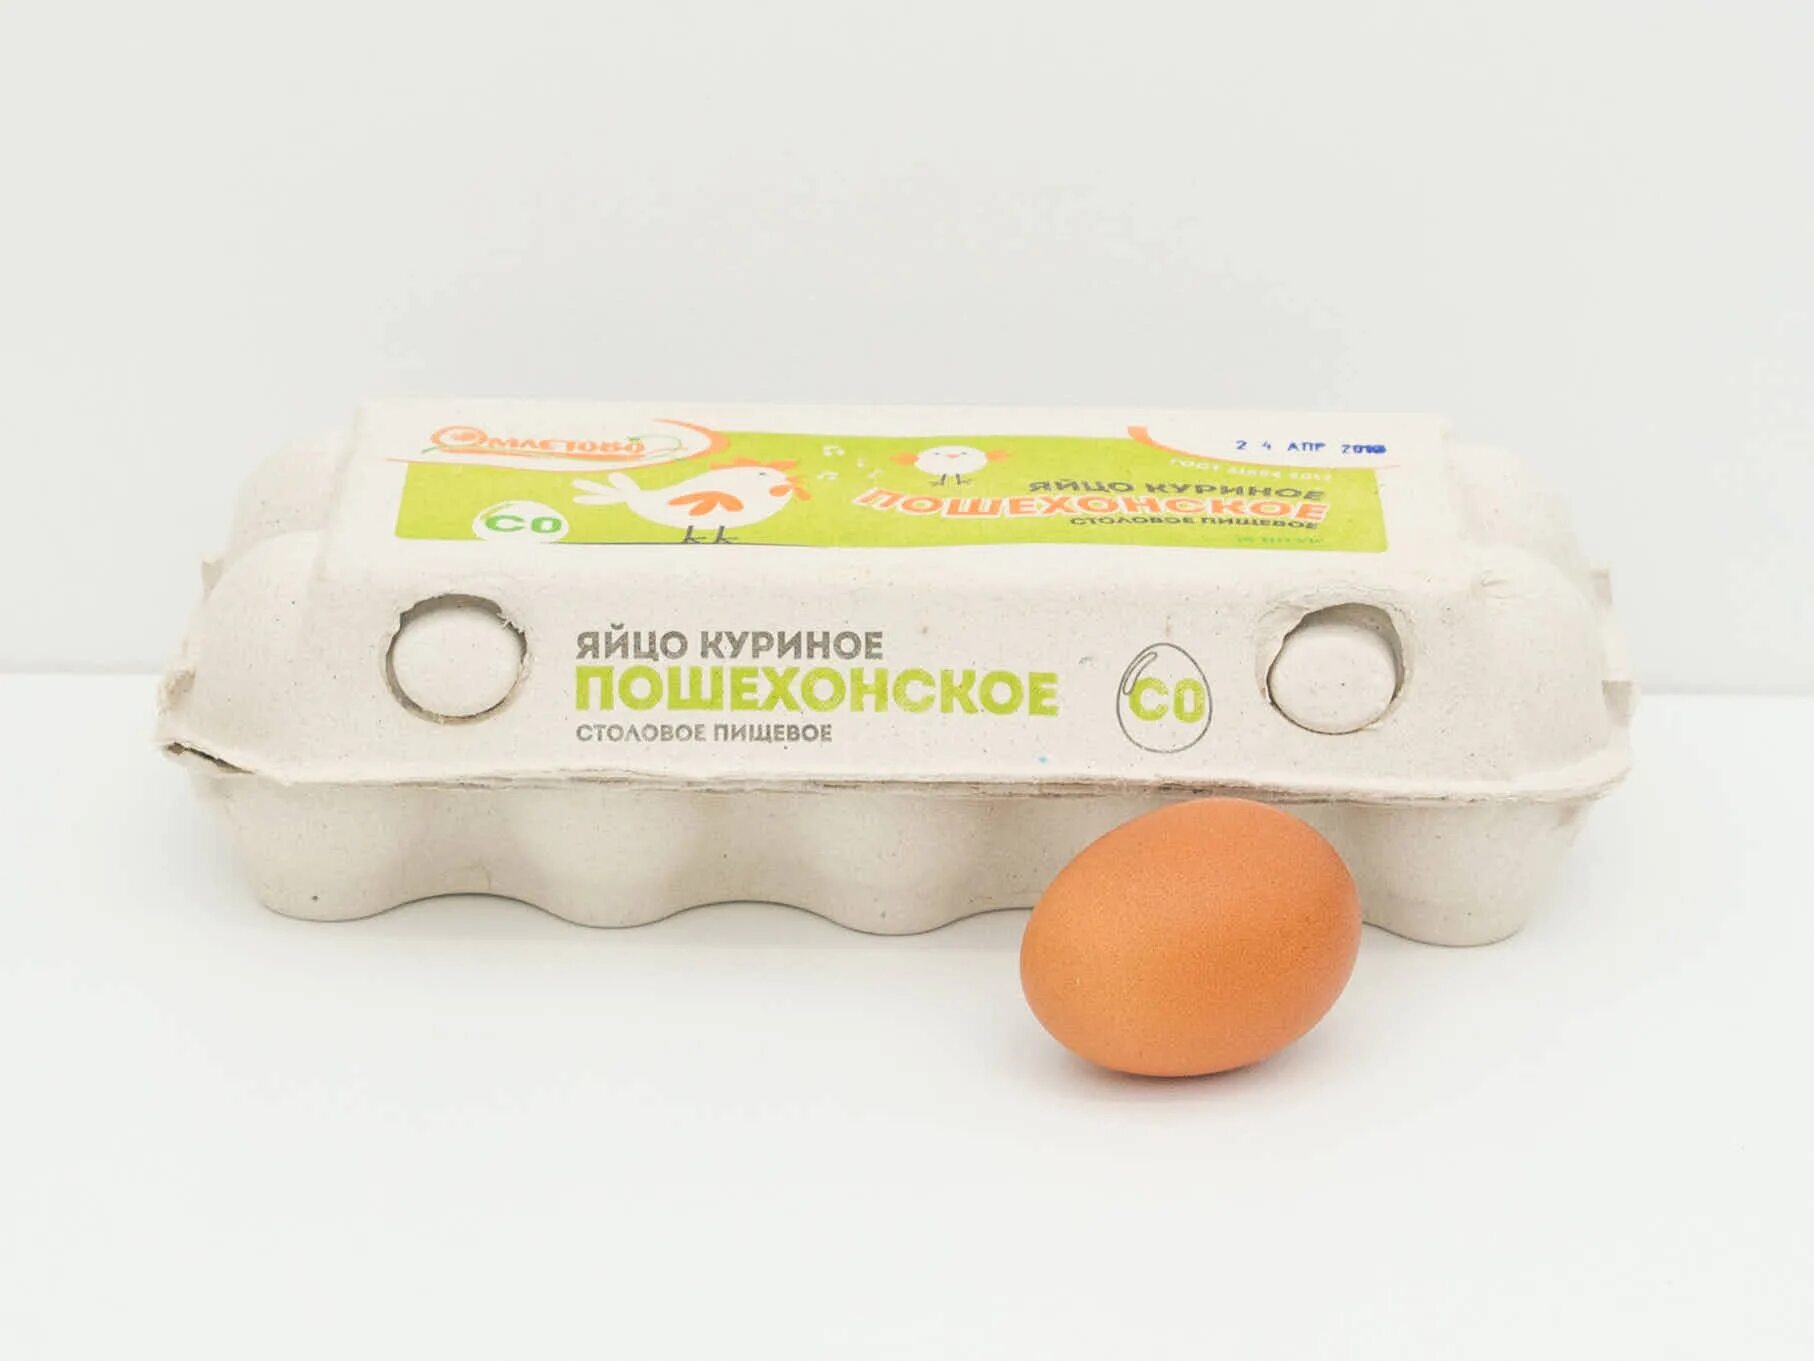 Яйцо куриное 10 шт. Яйцо куриное термо 10 шт. Яйцо куриное с0. Яйца куриные 10 шт в упаковке. Яйцо куриное (10 штук).